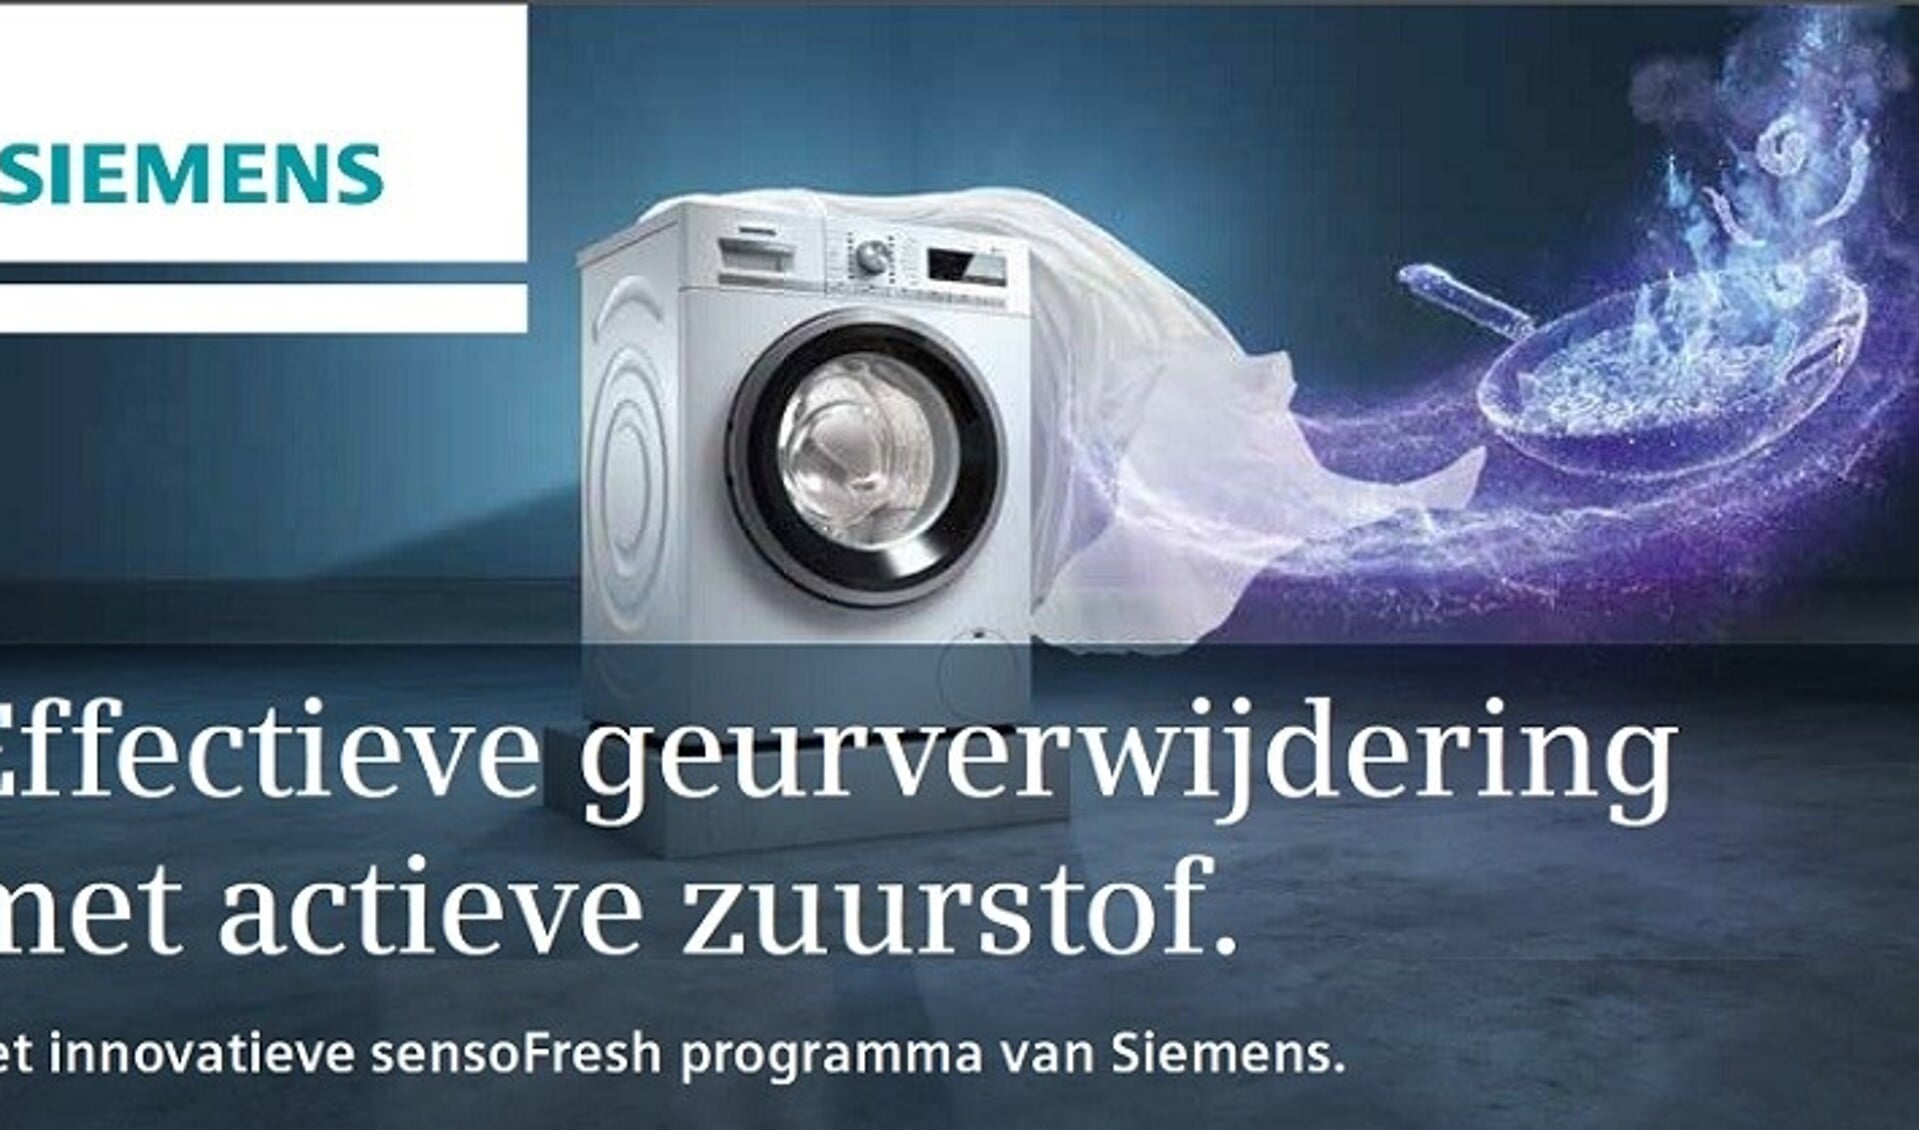 Het innovatie sensoFresh programma van Siemens.